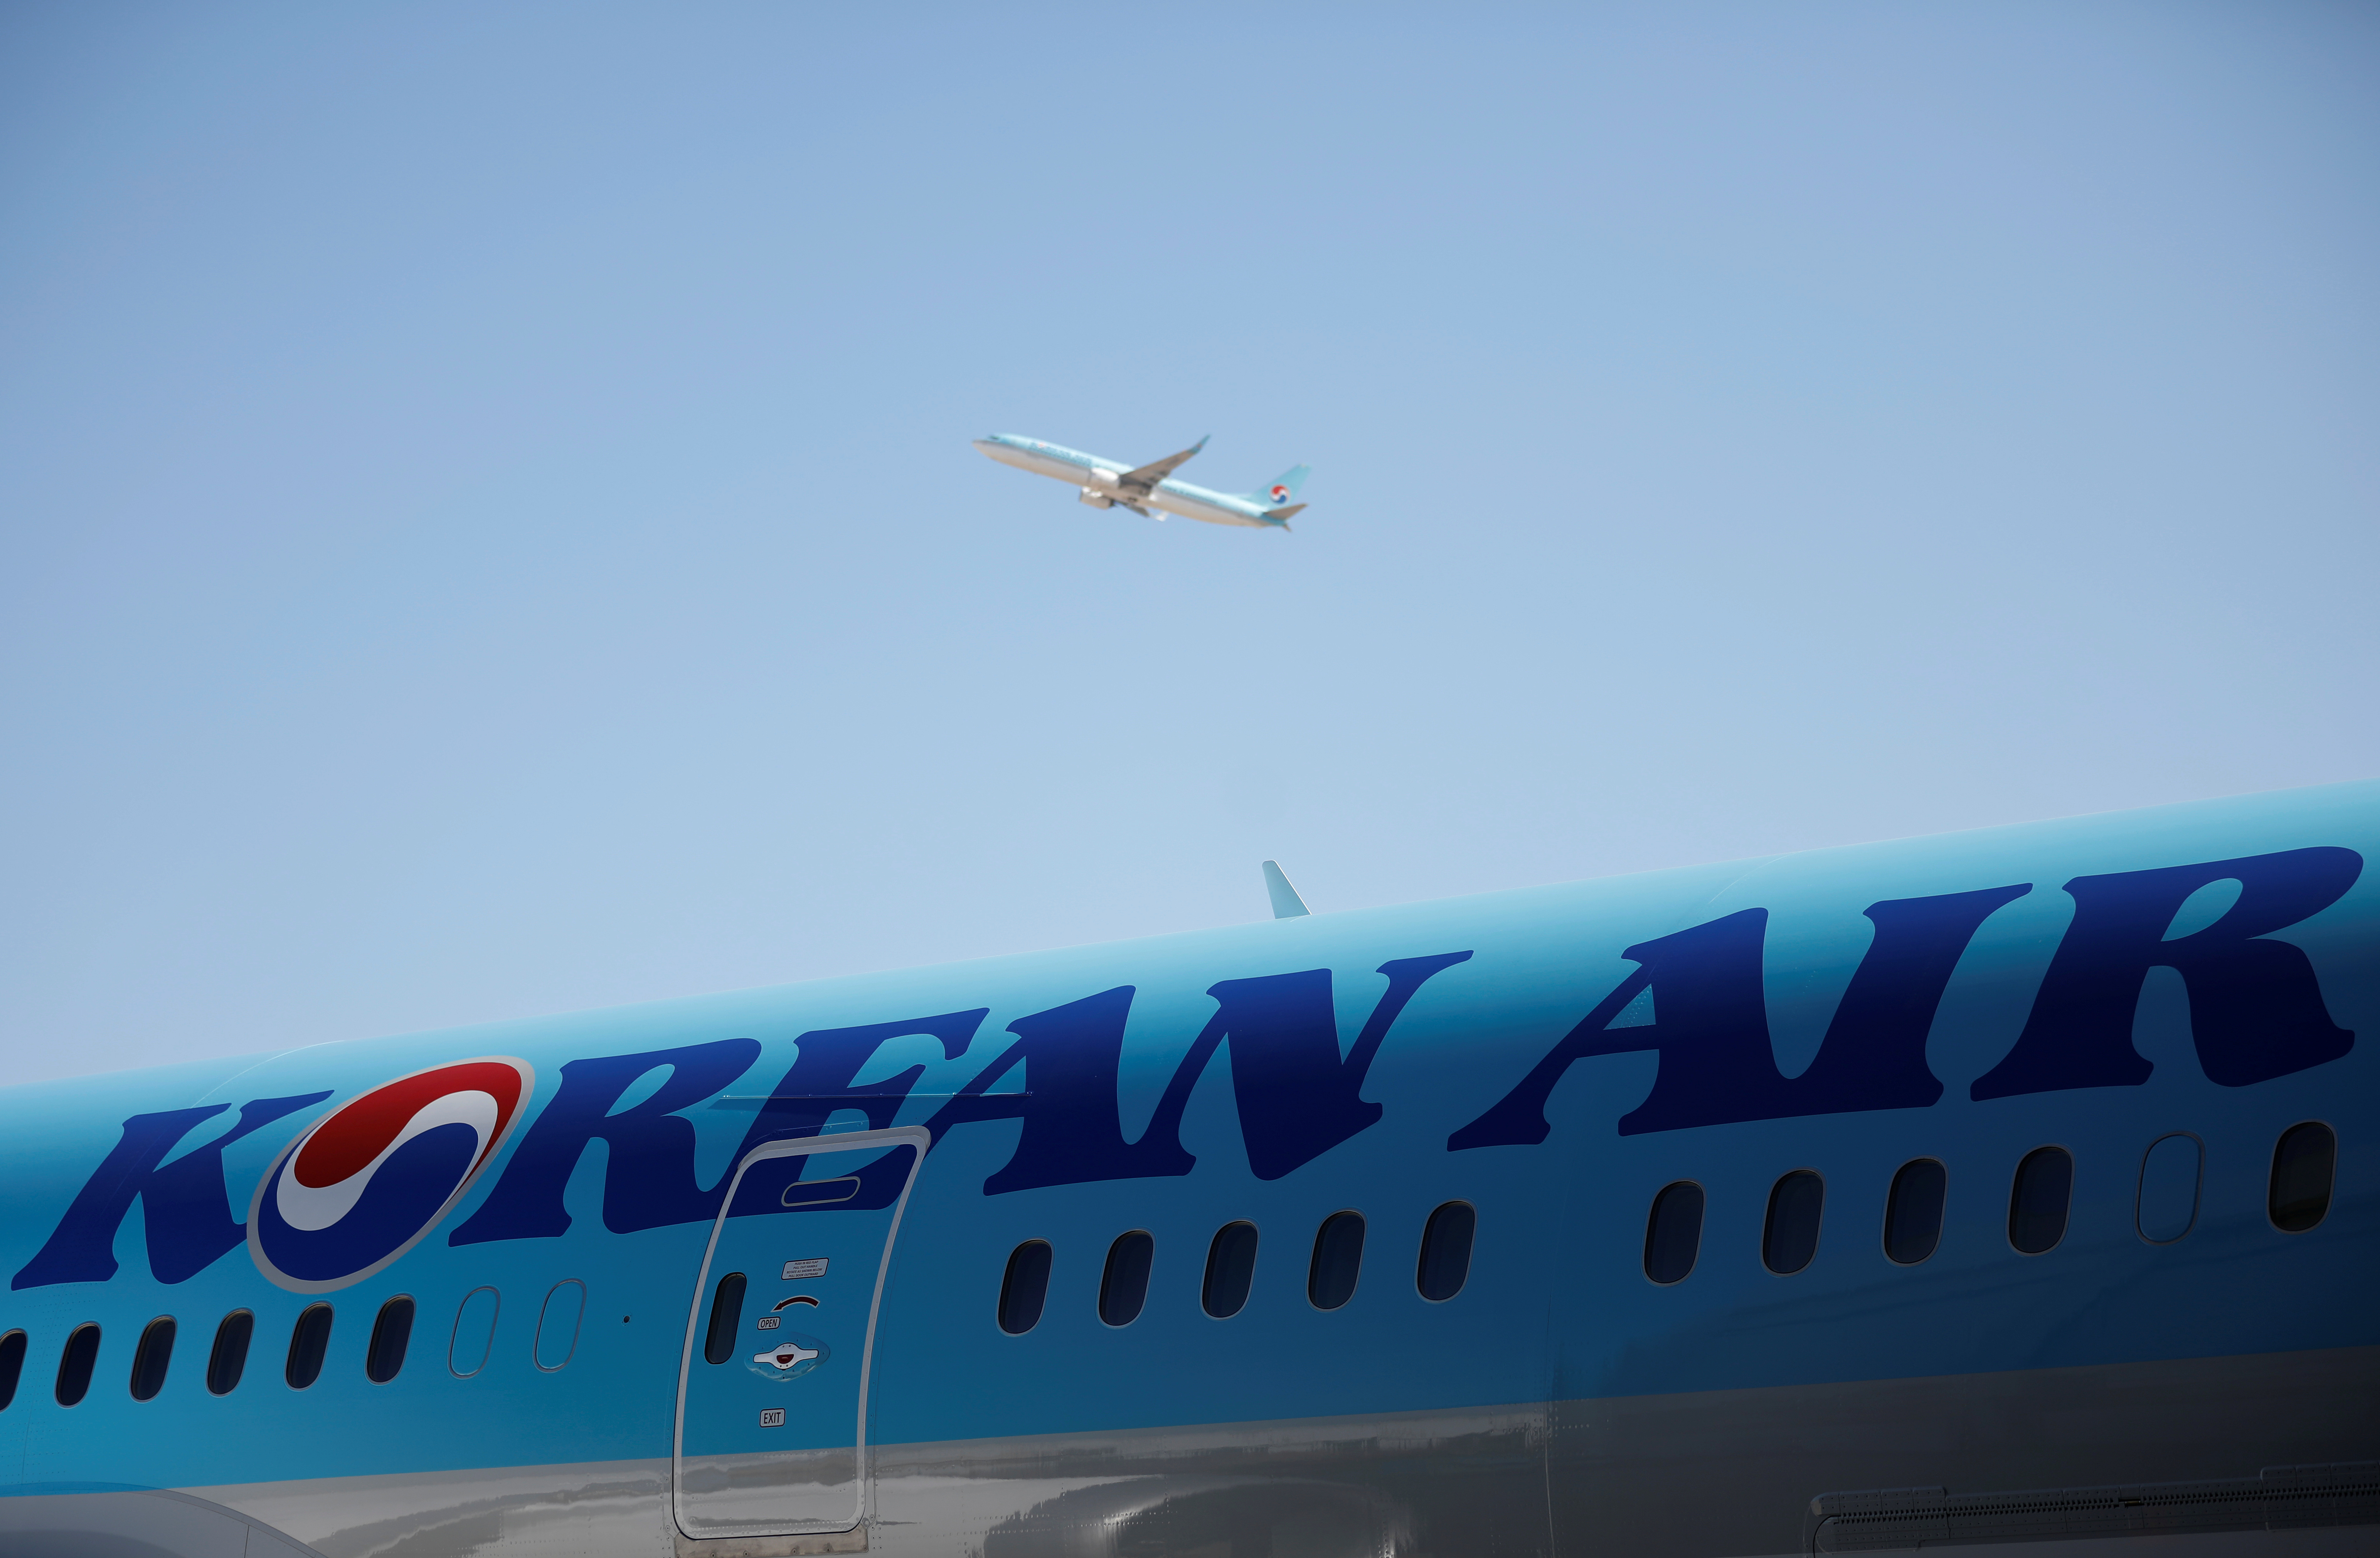 Η Korean Air προσφορές για την πώληση της επιχείρησης φορτίου της Asiana, τρόποι ικανοποίησης των ρυθμιστικών αρχών της ΕΕ – Πηγές